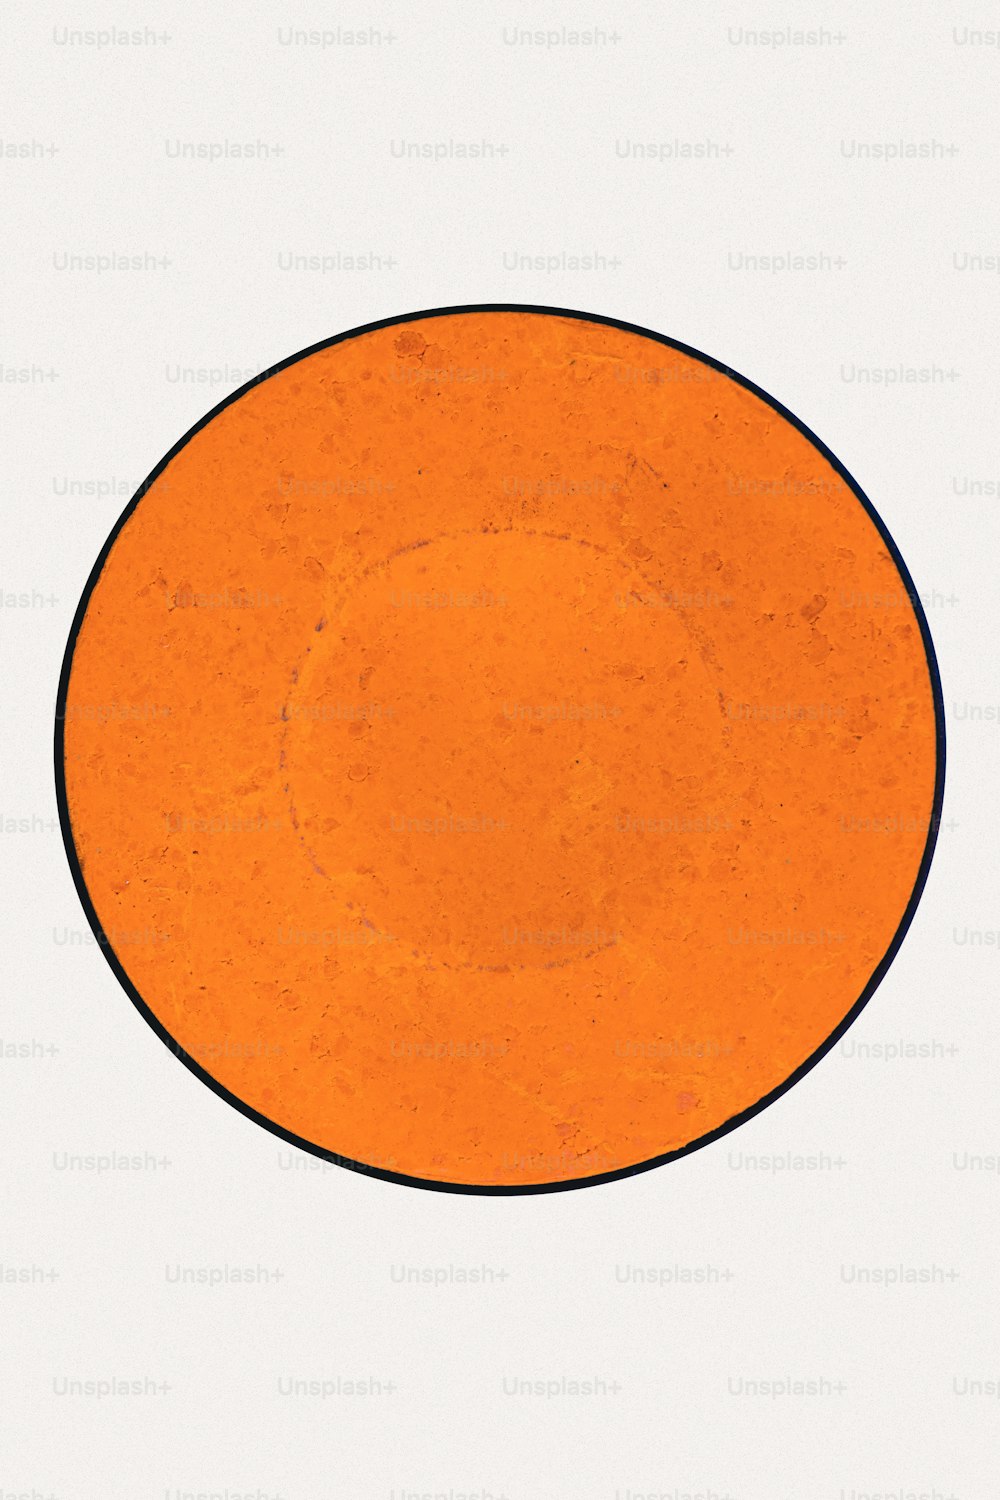 une plaque orange avec une bordure noire sur fond blanc